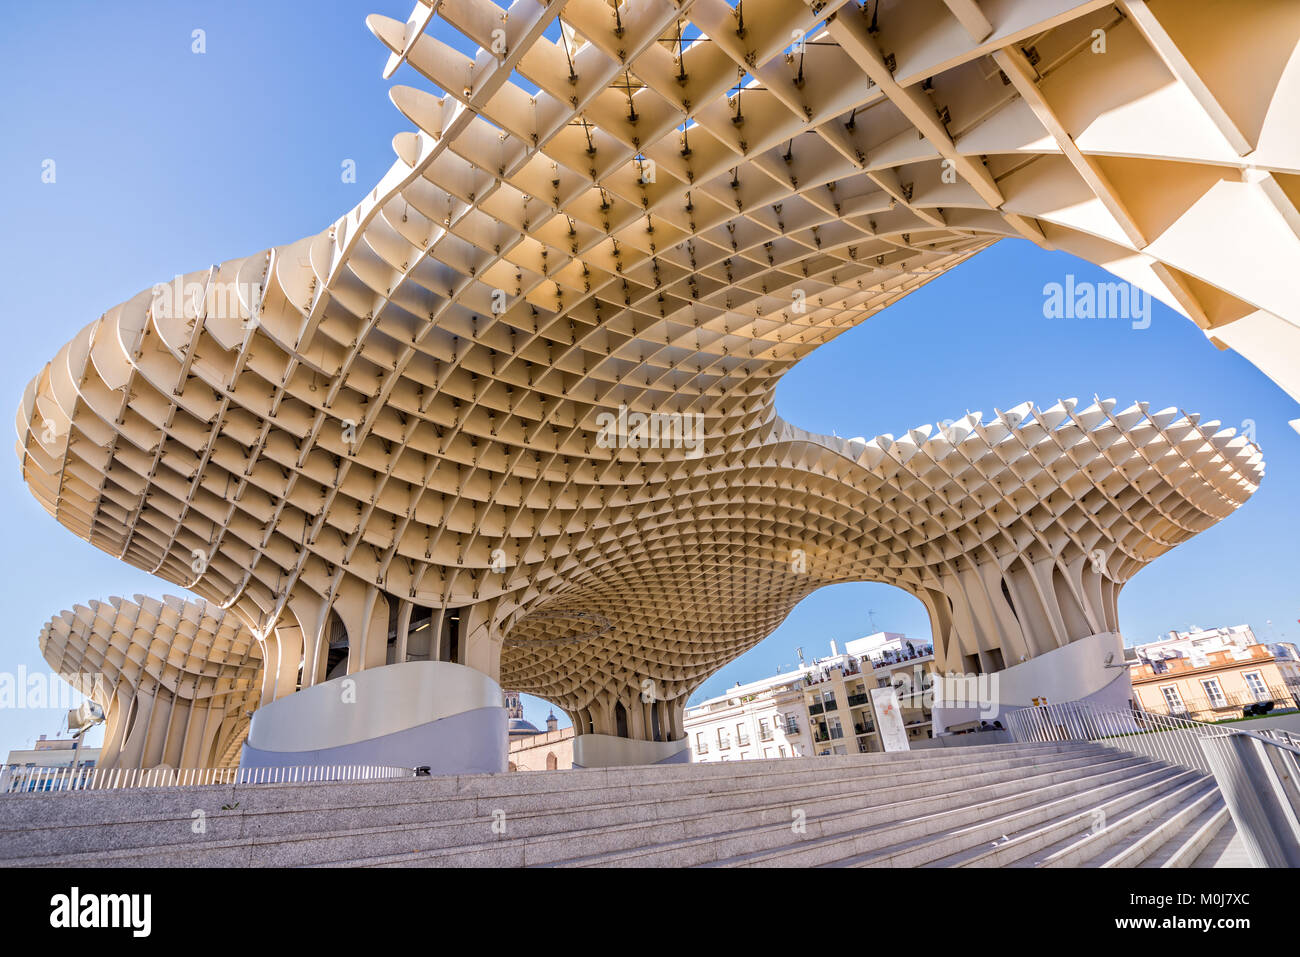 Séville, Espagne - 0ctobre 30 : Metropol Parasol, architecture moderne sur la Plaza de la Encarnacion, le 30 octobre 2015 à Séville Banque D'Images